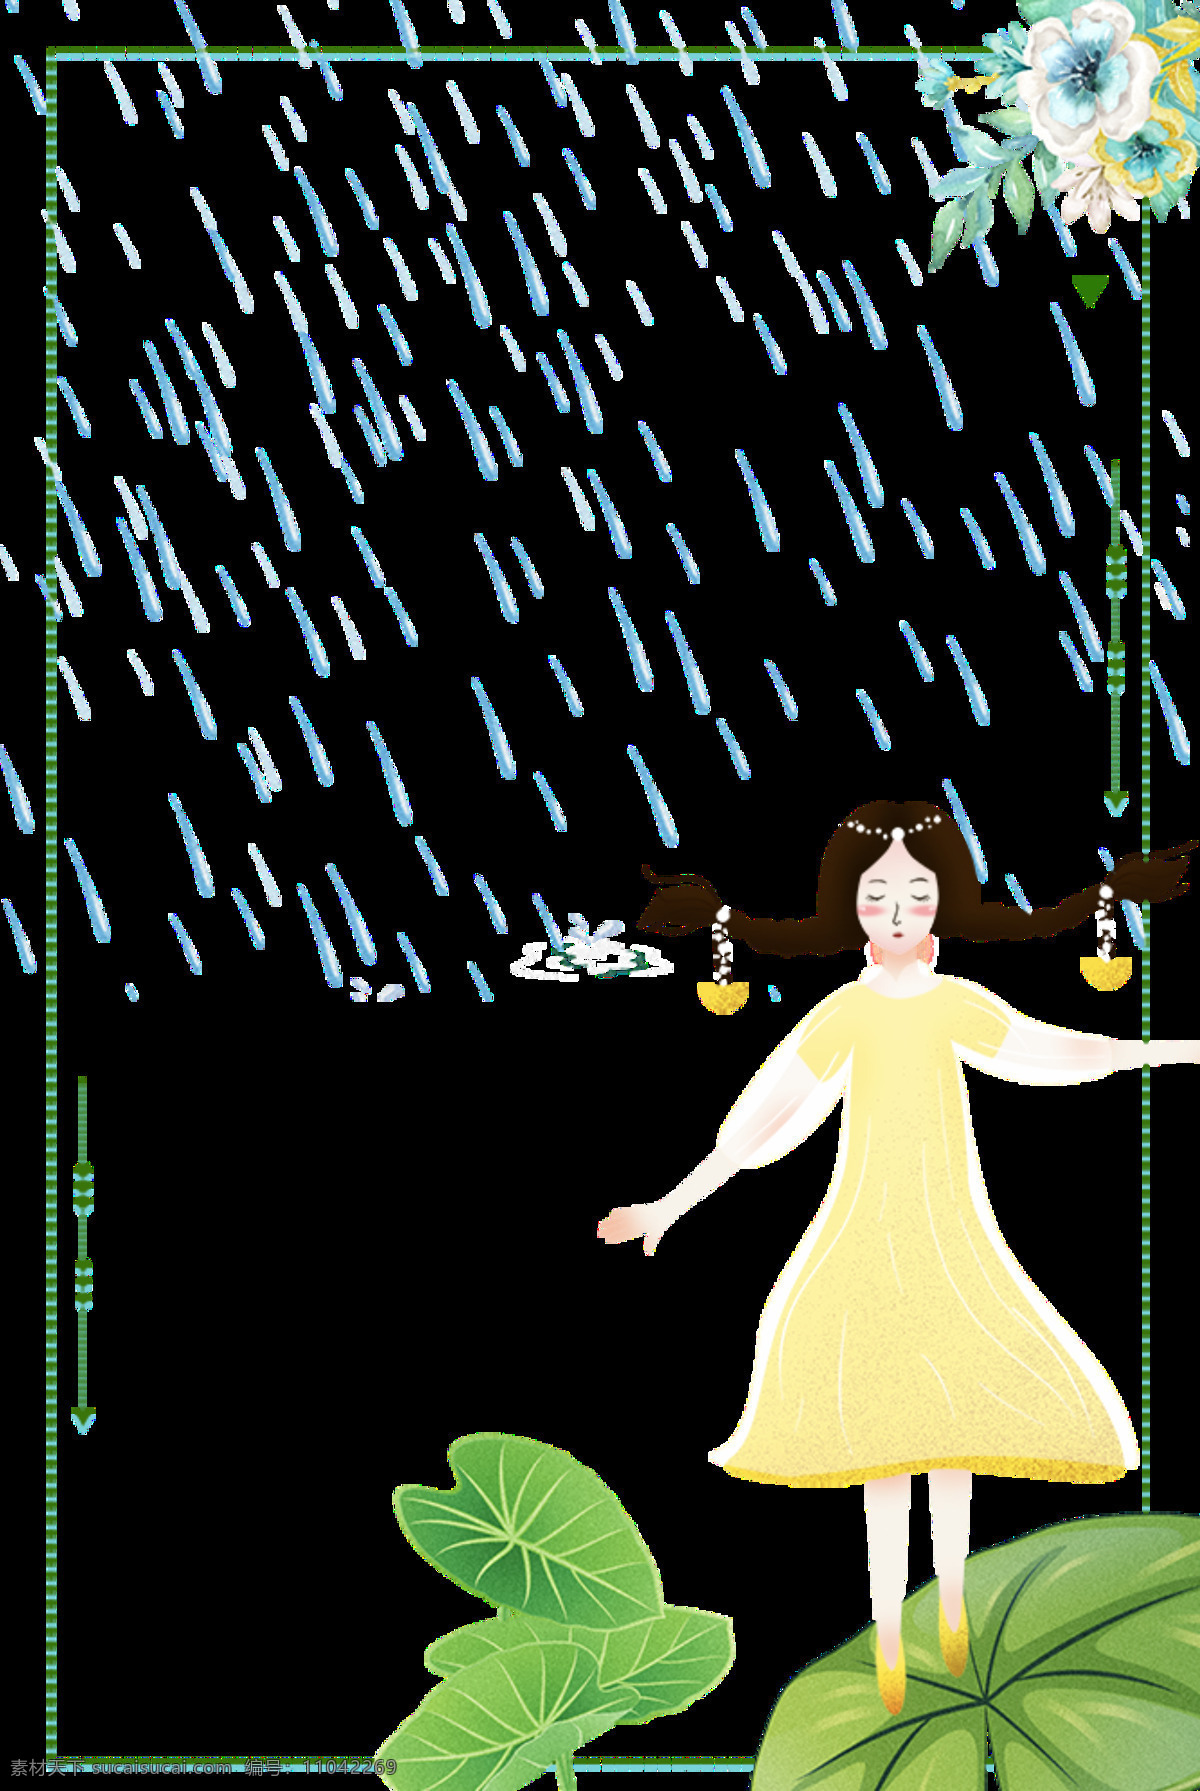 秀气 黄 衣 女孩 立夏 节日 元素 下雨 绿色边框 荷叶 二十四节气 花朵 黄衣姑娘 节日元素